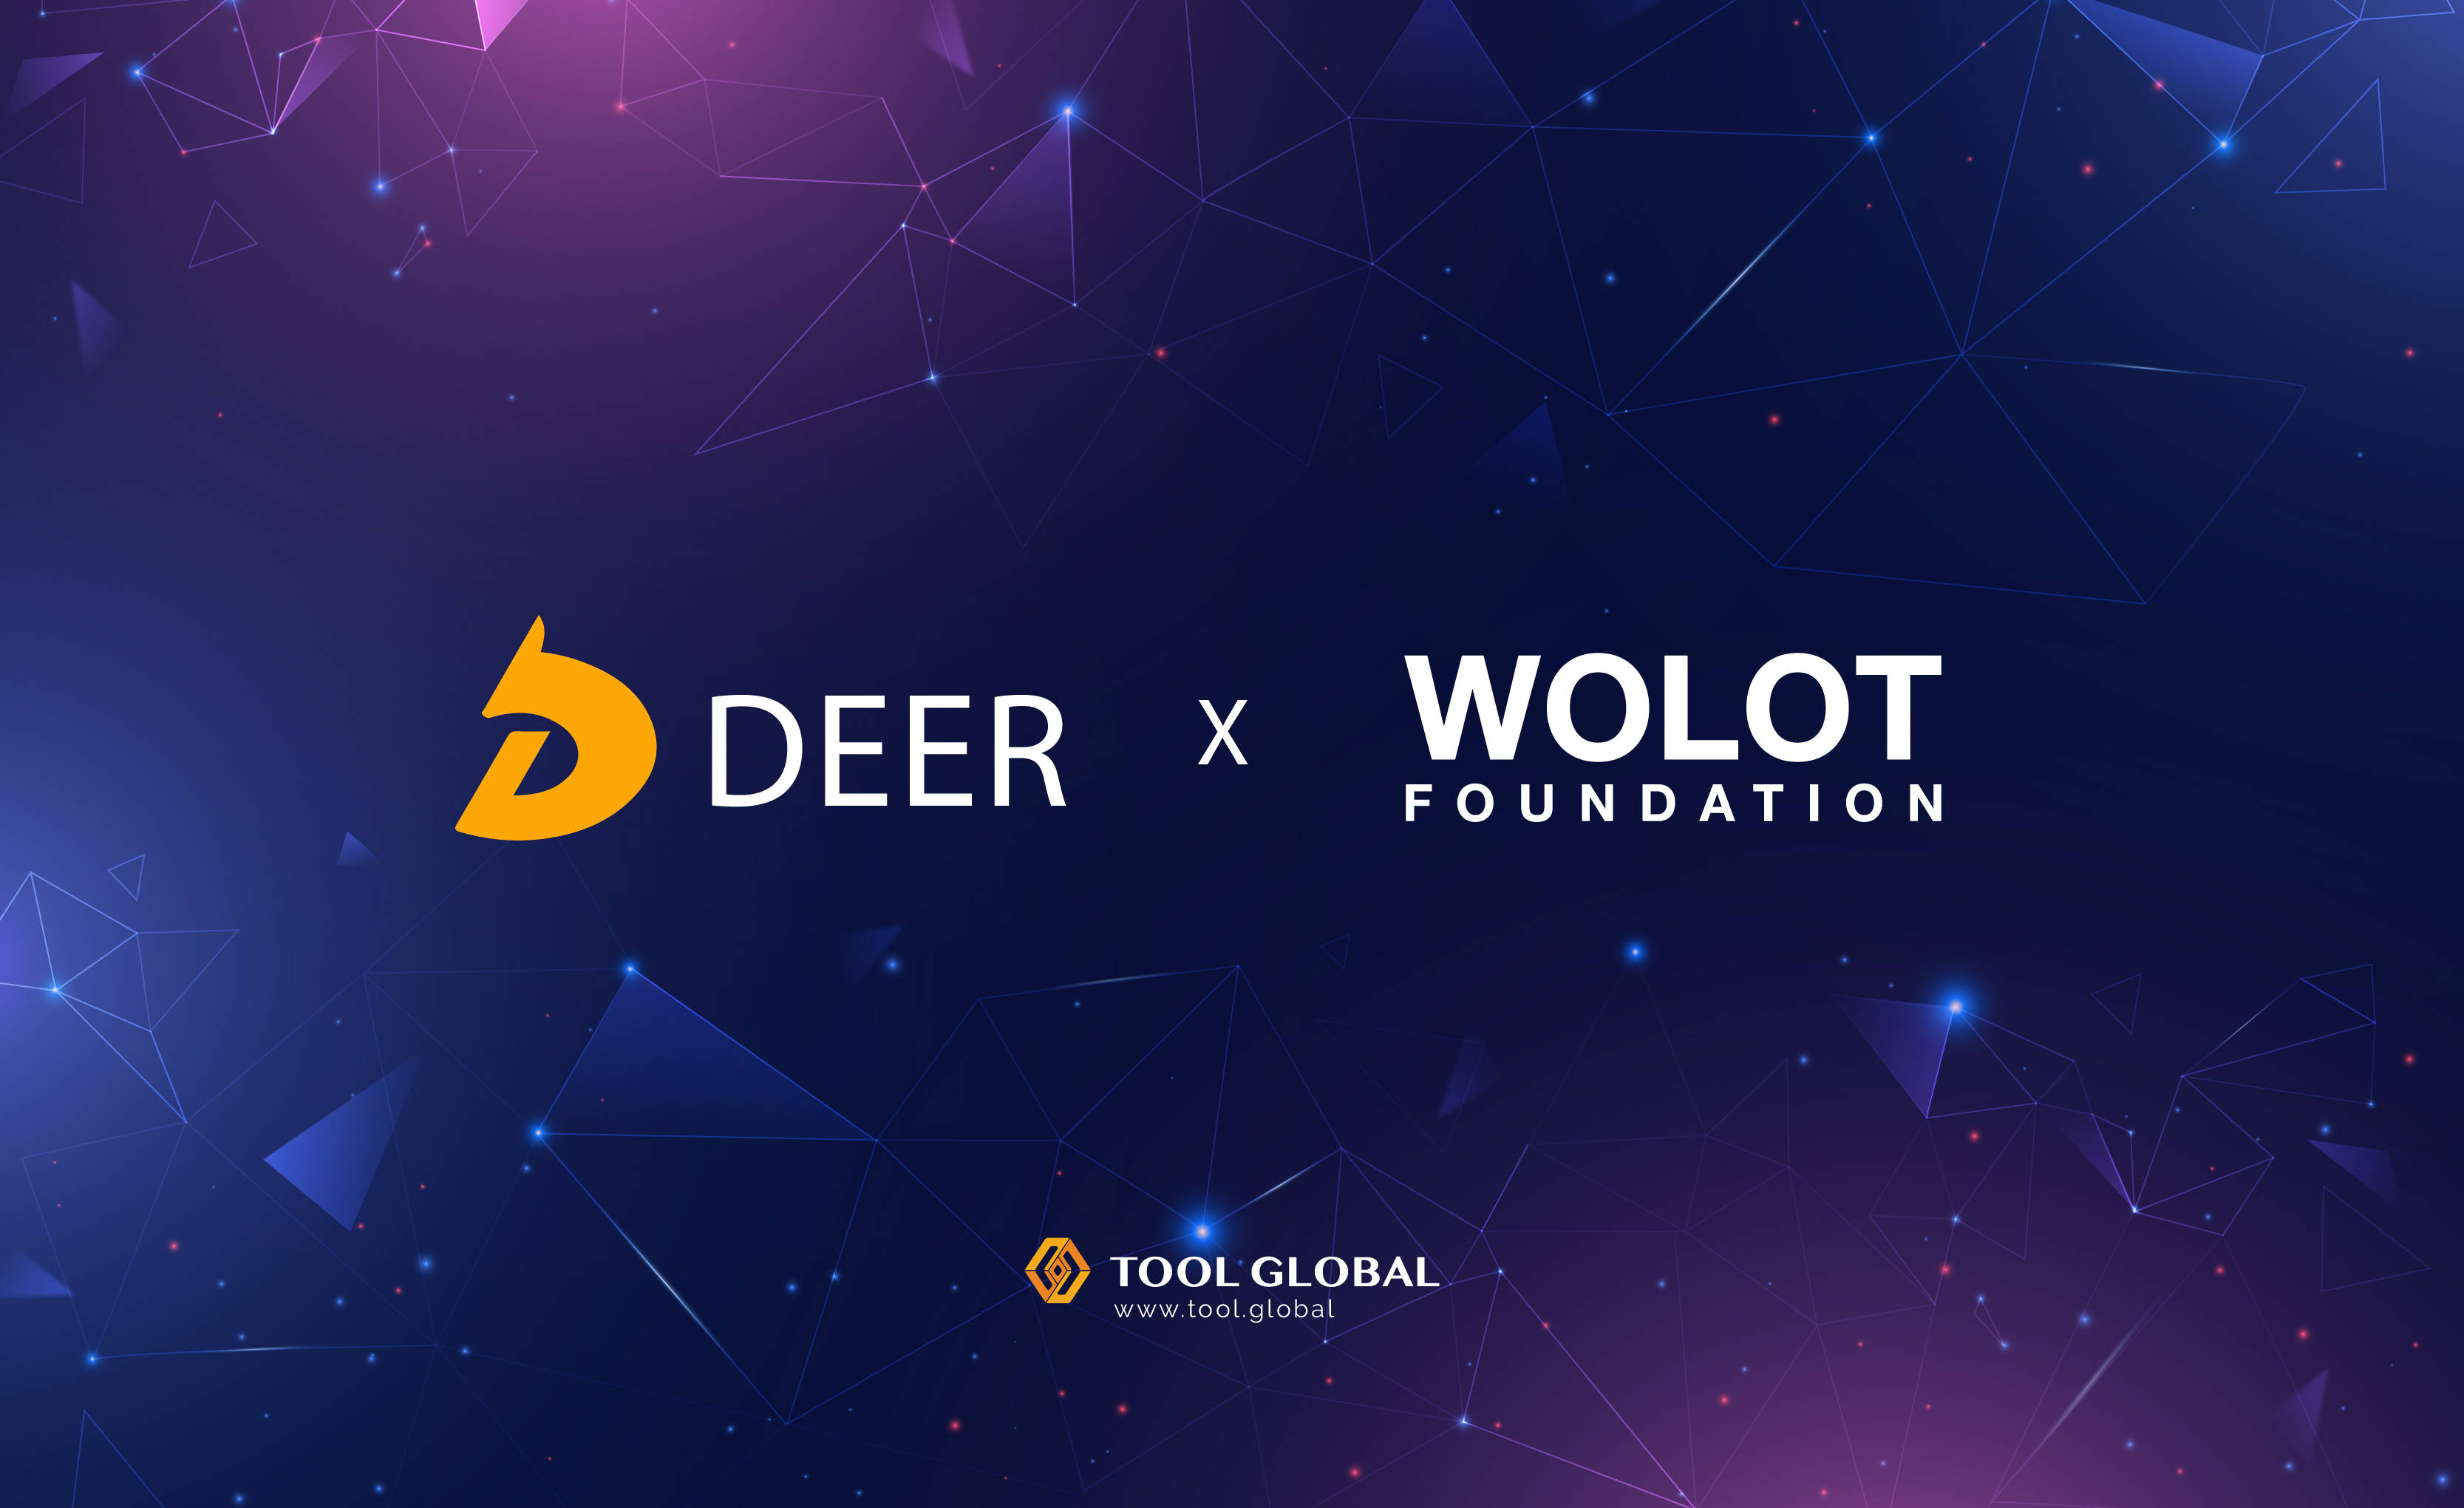 网络|WOLOT Foundation与DEER Network宣布将强强联手,打造元宇宙基础设施